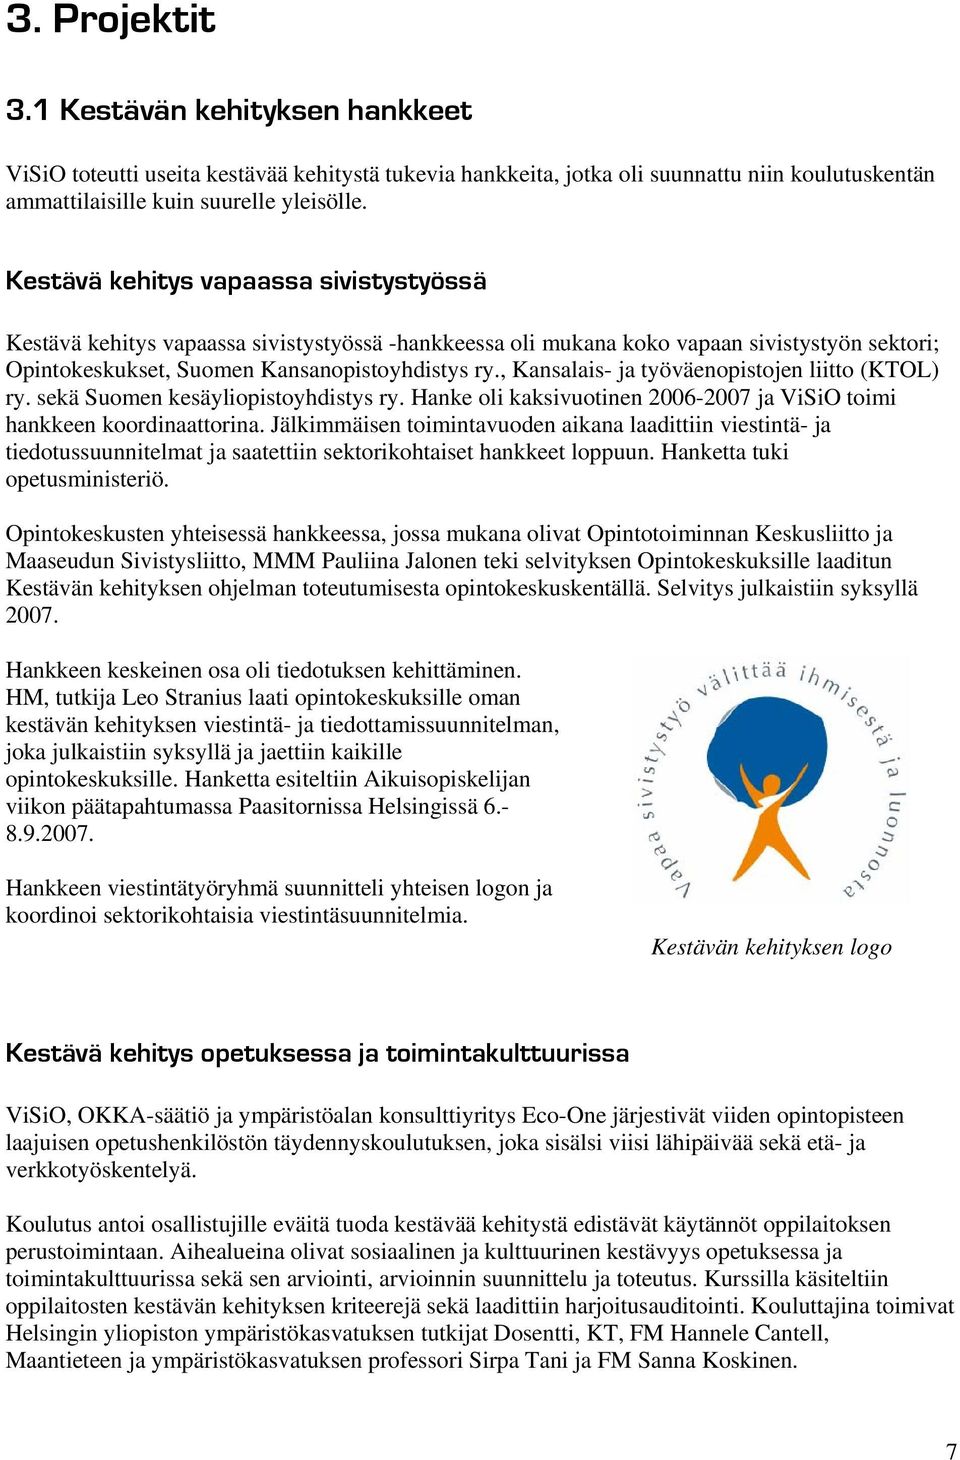 , Kansalais- ja työväenopistojen liitto (KTOL) ry. sekä Suomen kesäyliopistoyhdistys ry. Hanke oli kaksivuotinen 2006-2007 ja ViSiO toimi hankkeen koordinaattorina.